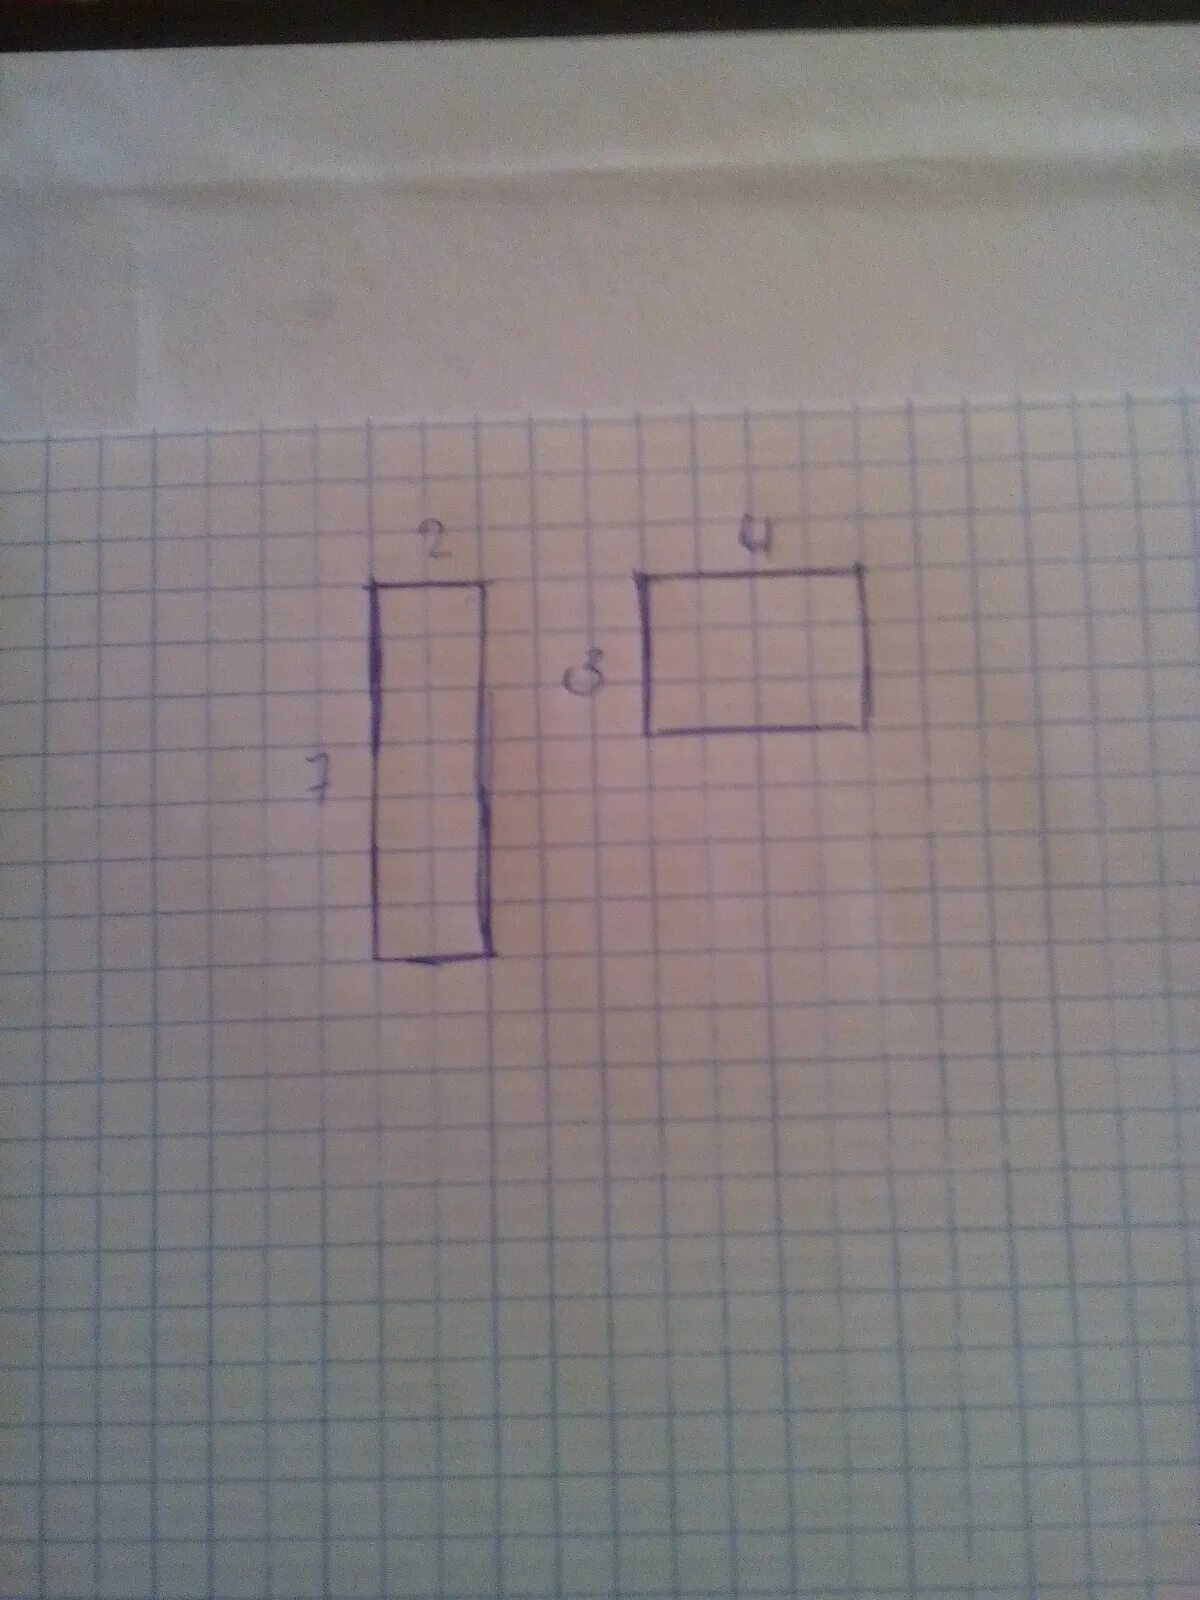 Начертить два разных прямоугольника с периметром 14 см. Начерти два прямоугольника. Начертить прямоугольник с периметром 14 см. Начерти несколько прямоугольников. 2 одинаковых прямоугольника площадью 18 сантиметров